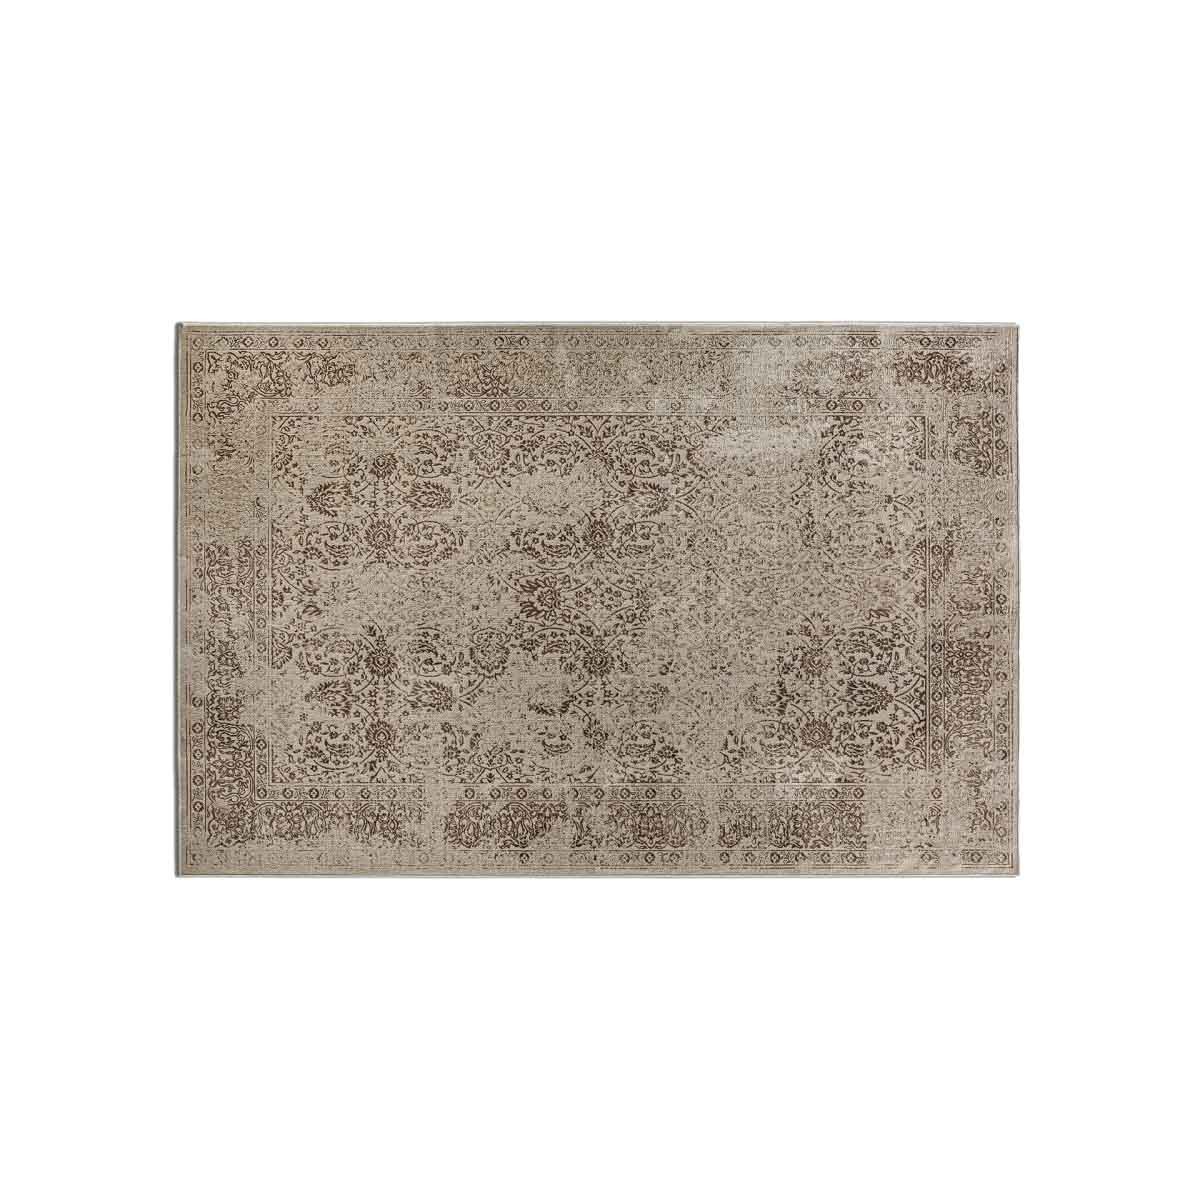 Estila Stylový koberec Rael s dekorativním florálním vzorem béžové barvy 200x290cm